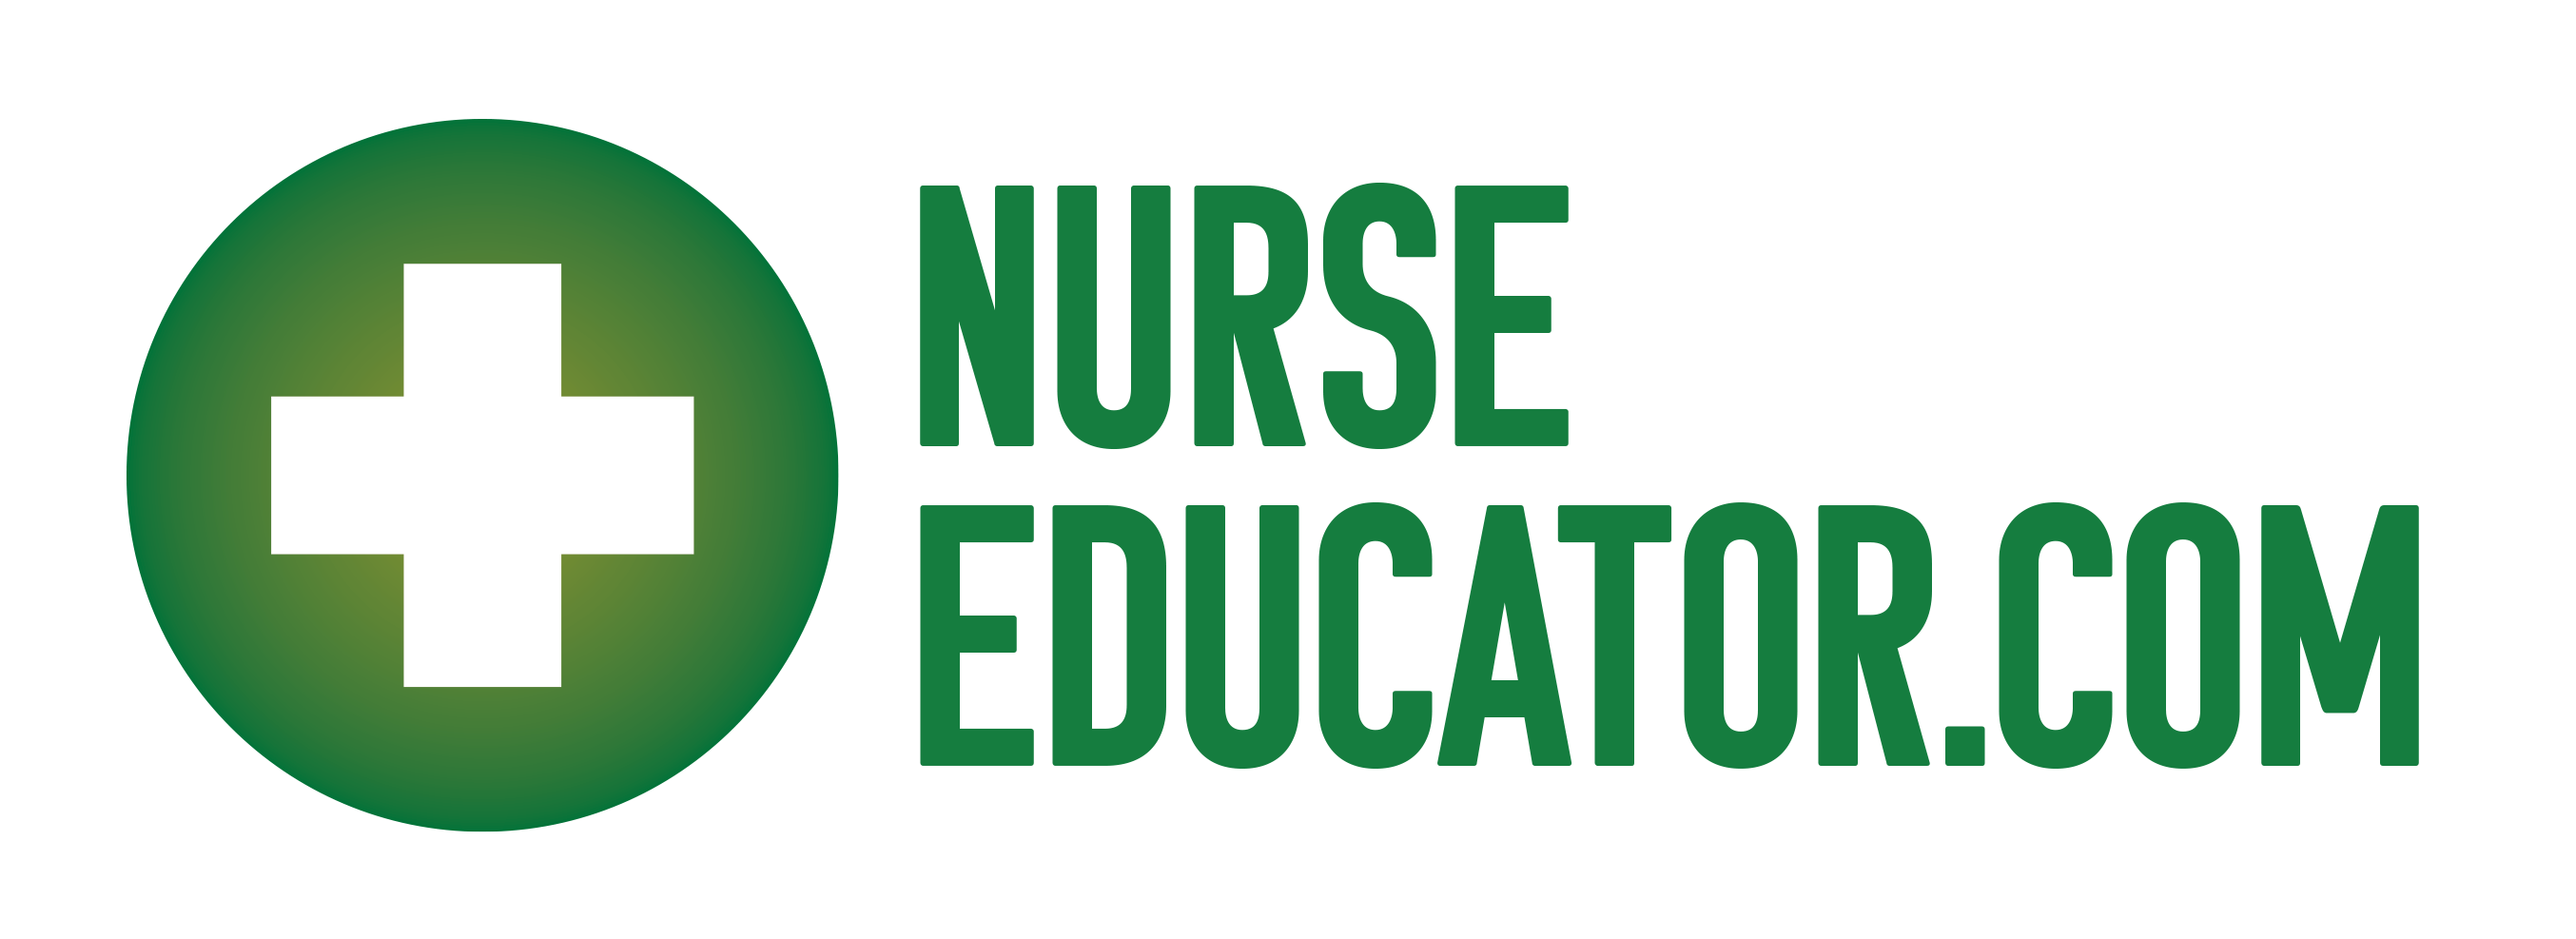 nurse educator job cover letter